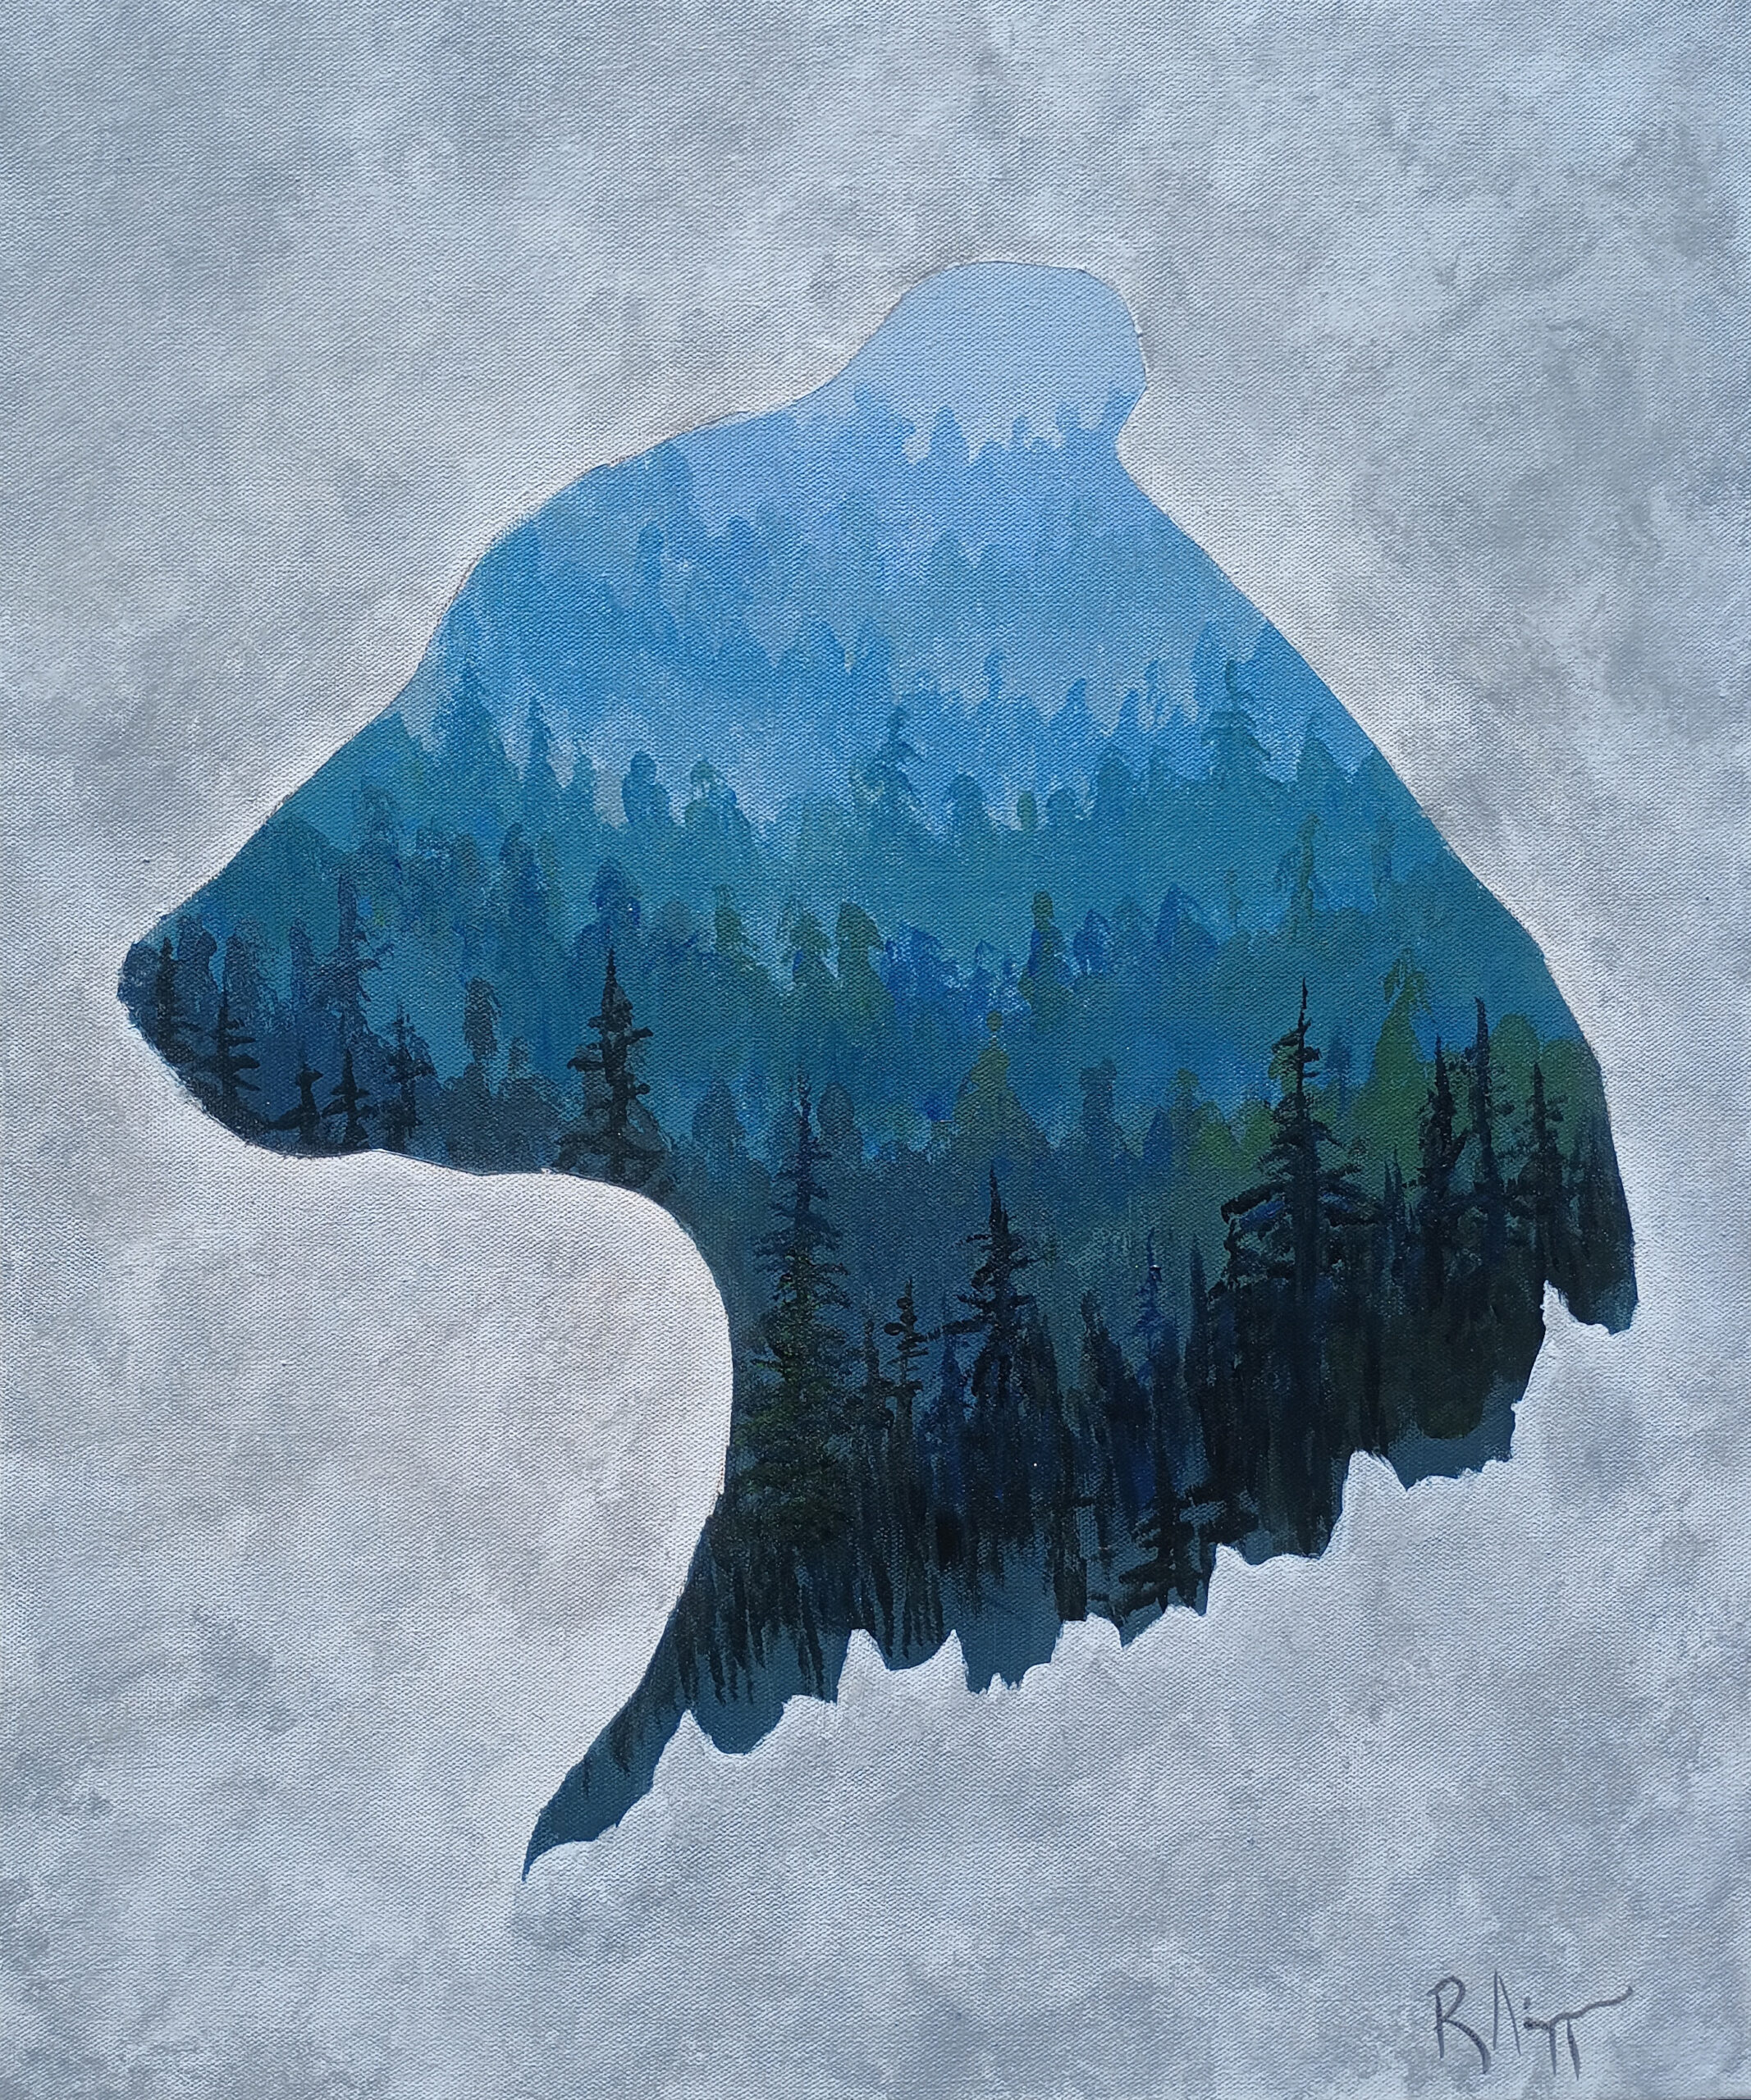 20 x 24 acrylic on canvas of a bear silhouette.